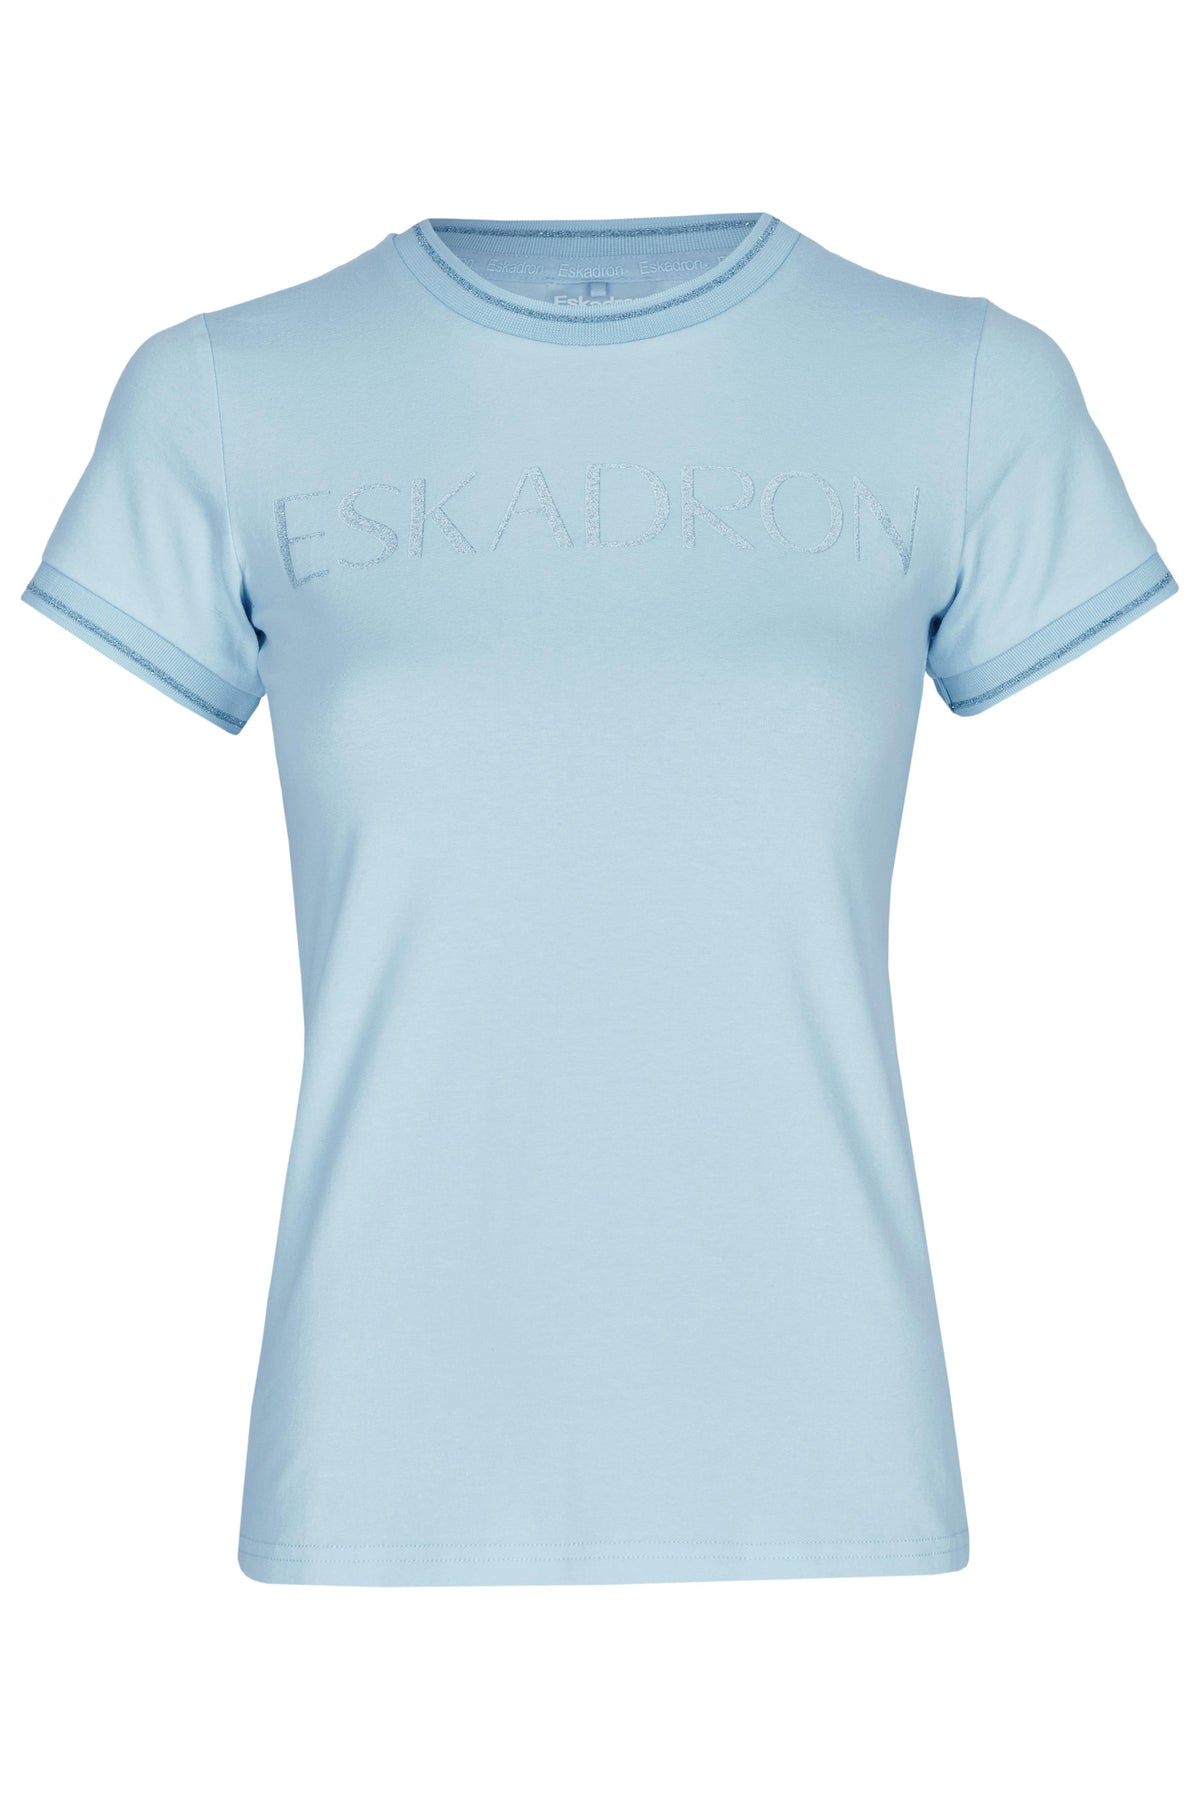 Eskadron Ladies Reflexx T-Shirt